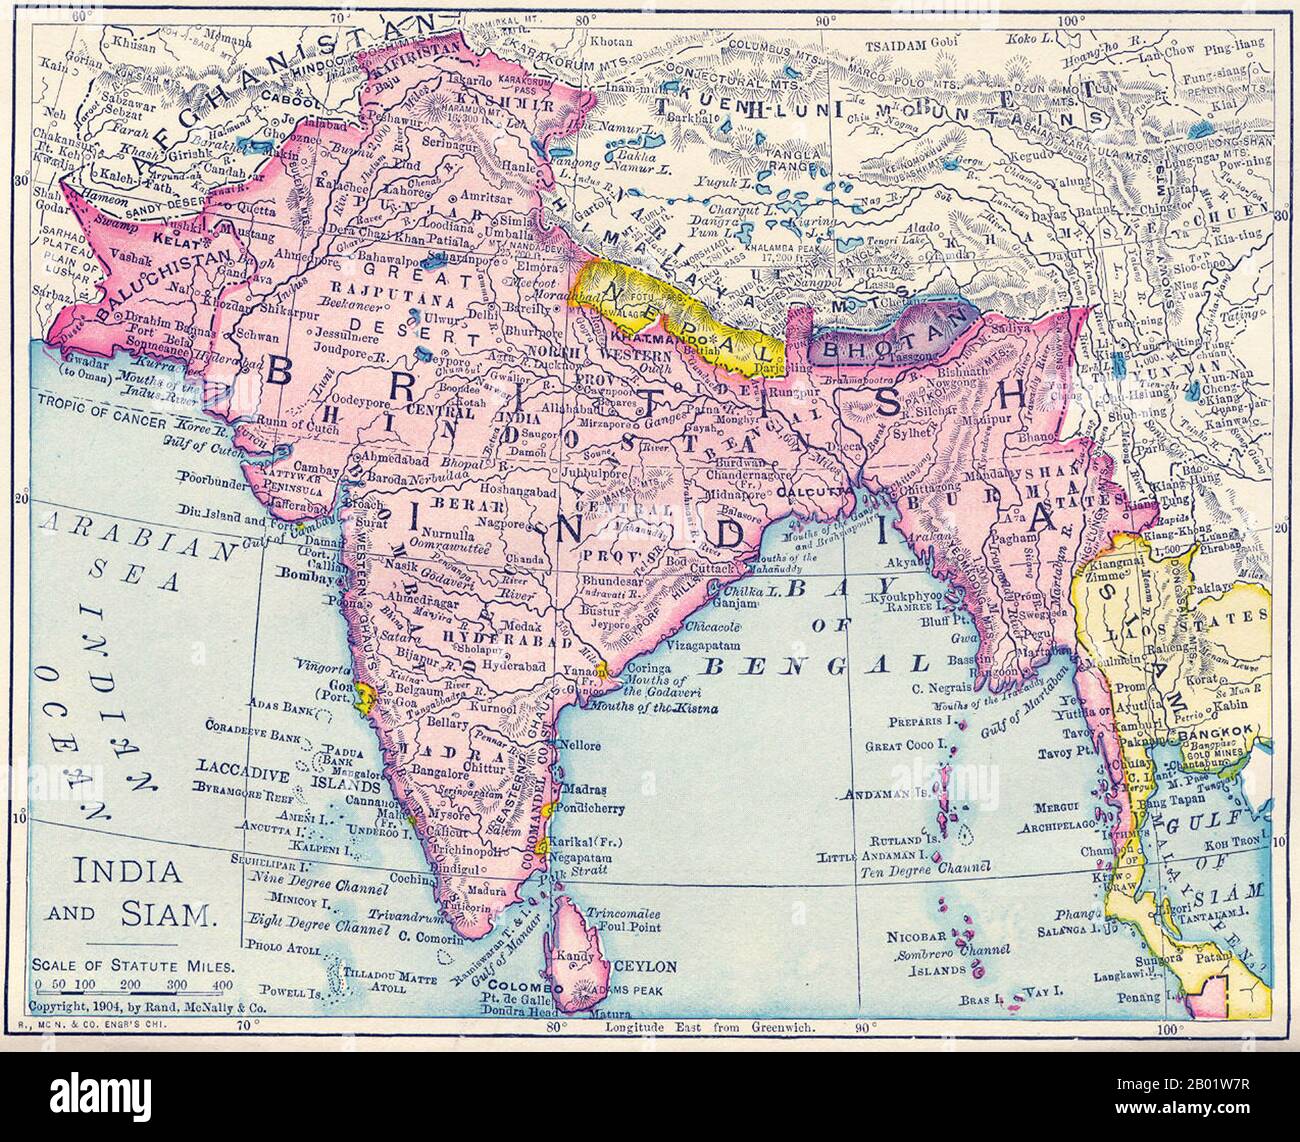 India: Mappa del Raj britannico, compresi gli attuali India, Pakistan, Bangladesh, Birmania e Sri Lanka, 1904. Questa mappa è stata prodotta al culmine del potere imperiale britannico e mostra il dominio britannico diretto che si estende dall'Iran (Persia) alla Thailandia (Siam). La maggior parte del litorale contiguo dell'Oceano Indiano, dal Sudafrica a Singapore e all'Australia, era sotto l'amministrazione britannica o de facto sotto il controllo. È rilevante notare che la mappa mostra il Sikkim che si estende a nord nell'attuale territorio della regione autonoma tibetana cinese. Allo stesso modo, Darjeeling è mostrato nel Nepal orientale. Foto Stock